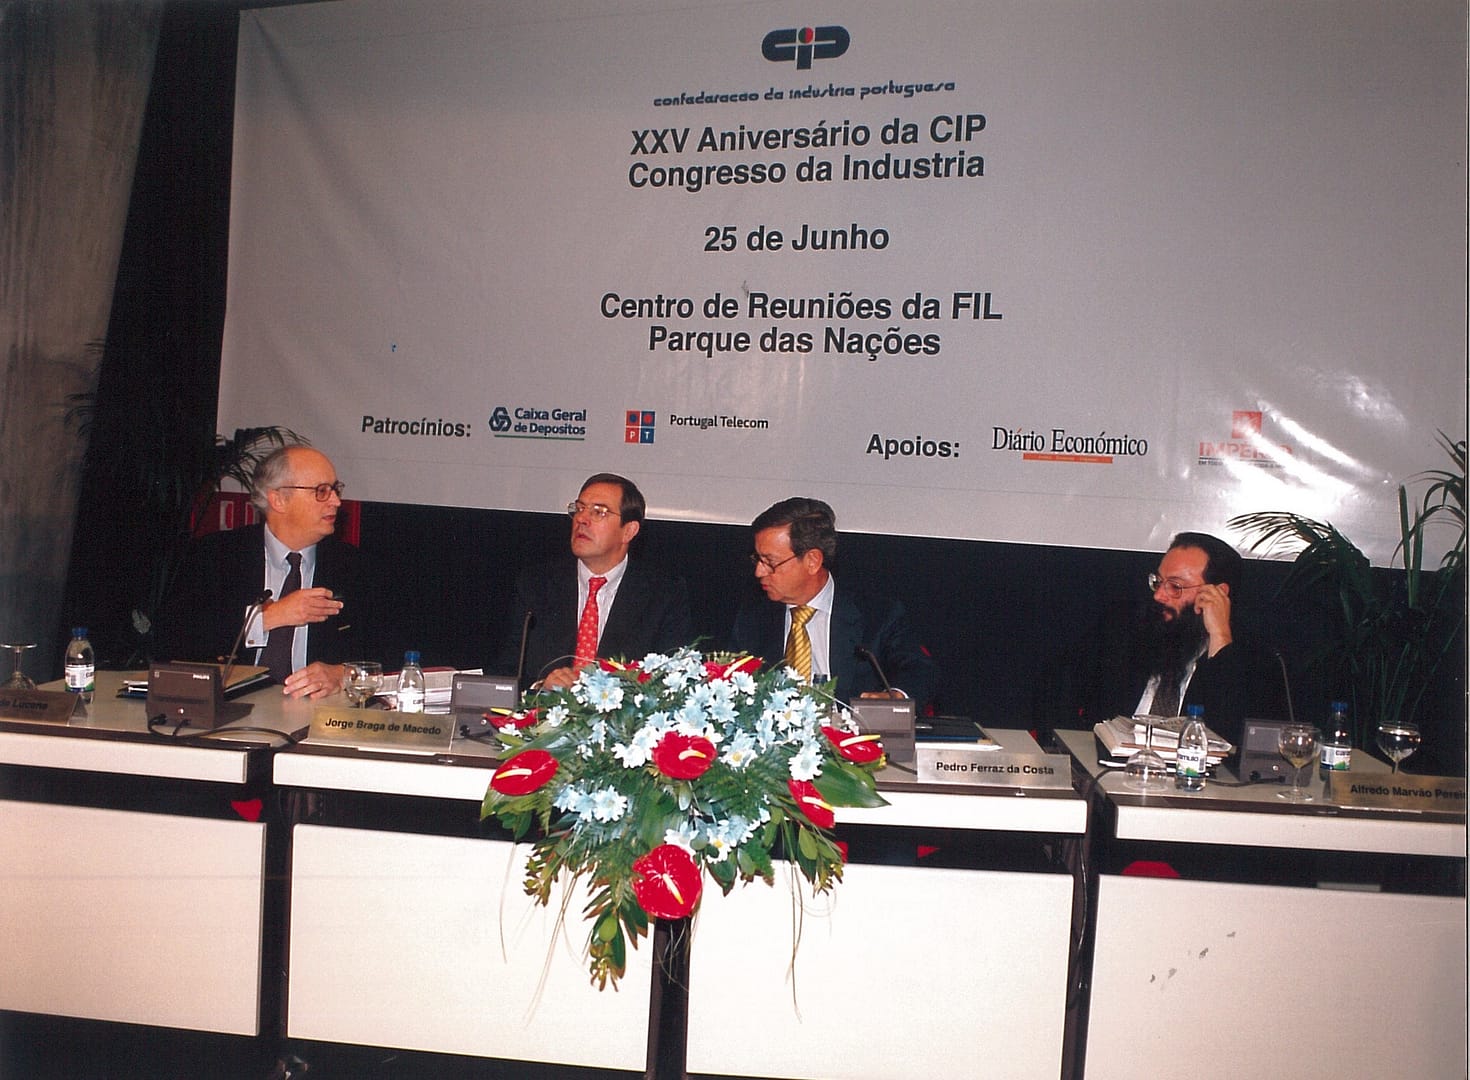 06 foto historia 1999 Congresso da Industria 25 anos